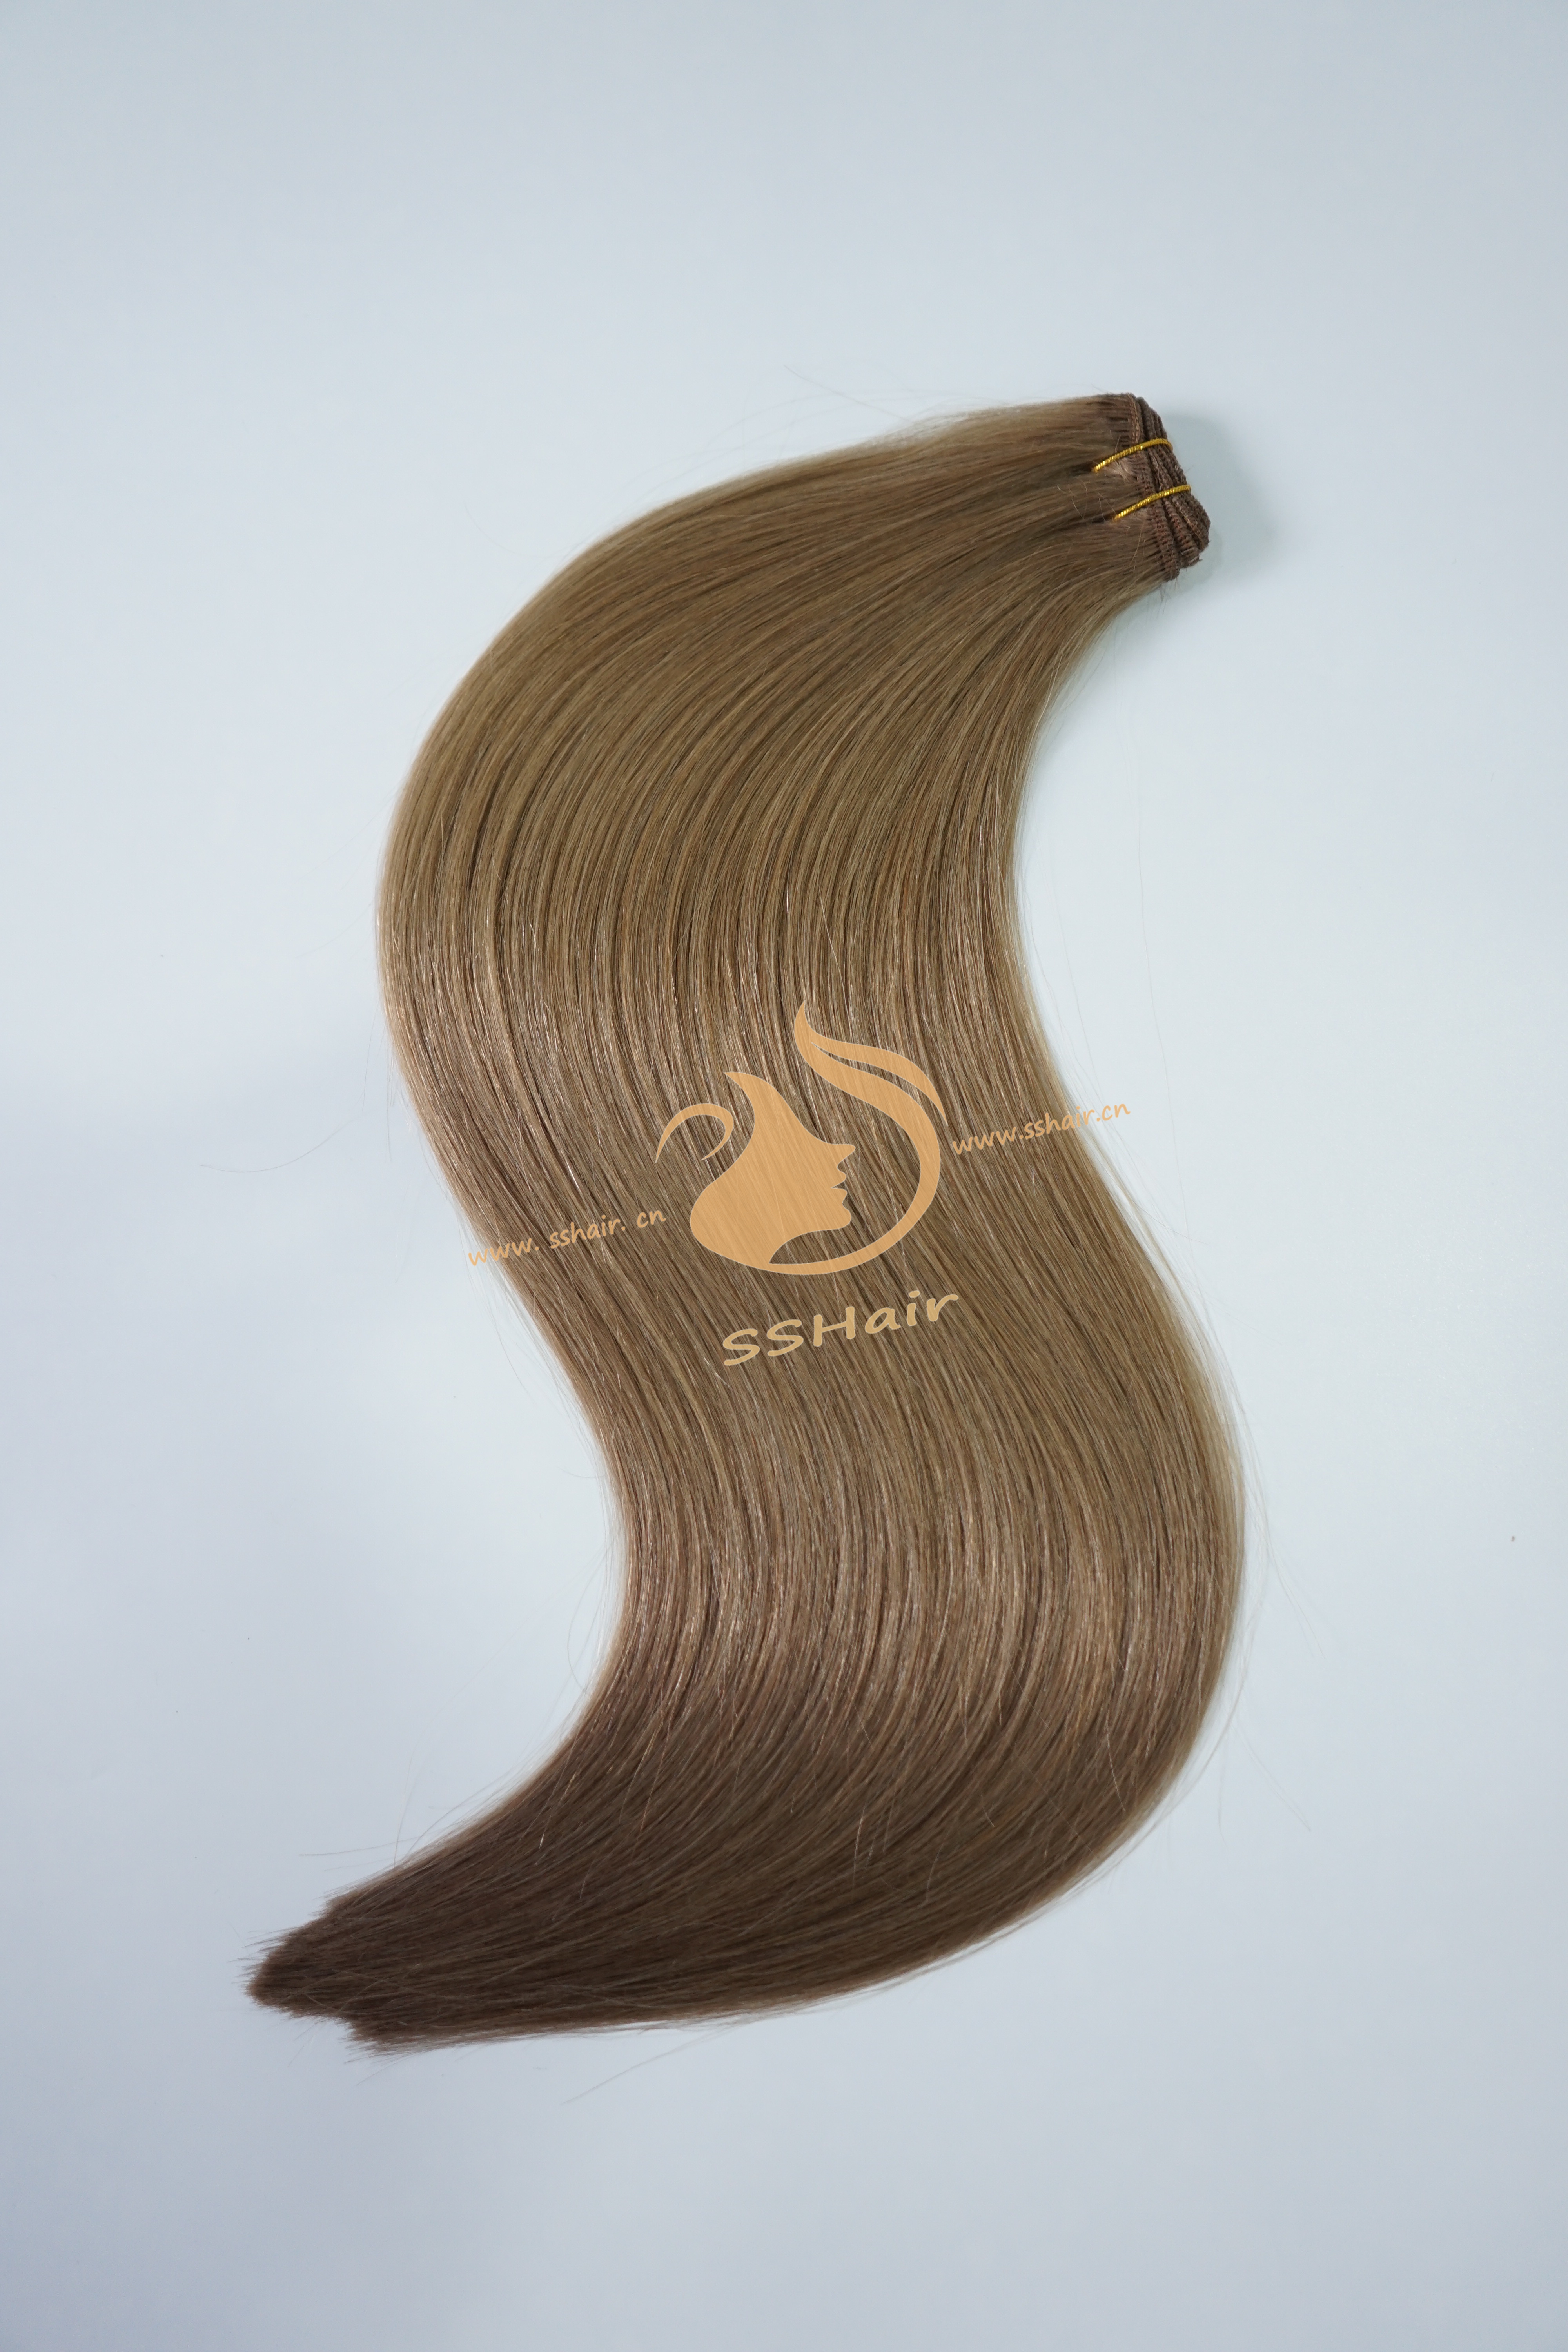 SSHair // Hair Weft // Virgin Human Hair // 16# // Straight